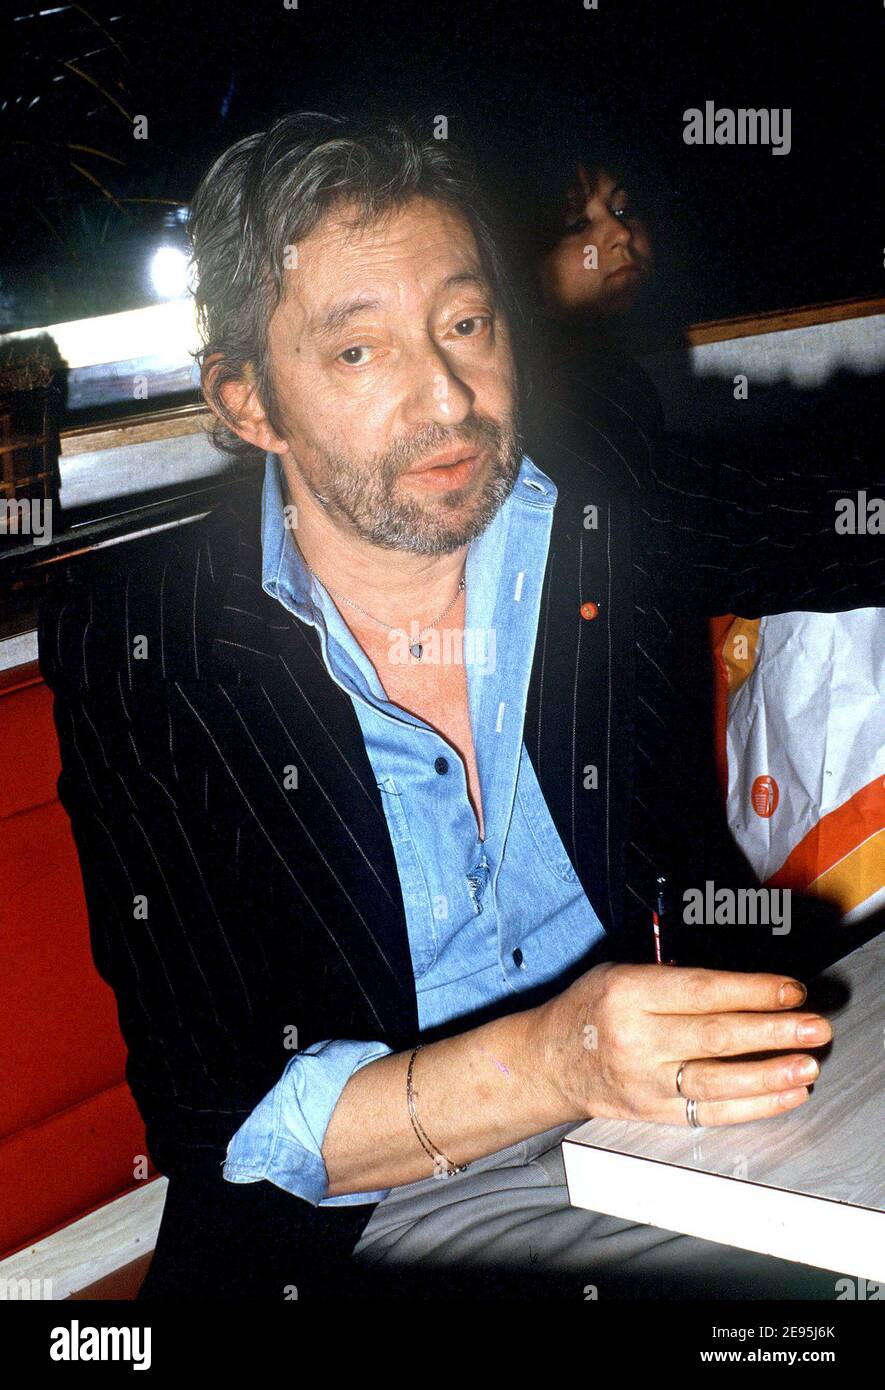 Der französische Sänger Serge Gainsbourg raucht und trinkt Whisky in einem Pub in der Nähe von Montparnasse in Paris, Frankreich am 1987. September. Foto von Christophe Geyres/ABACAPRESS.COM Stockfoto